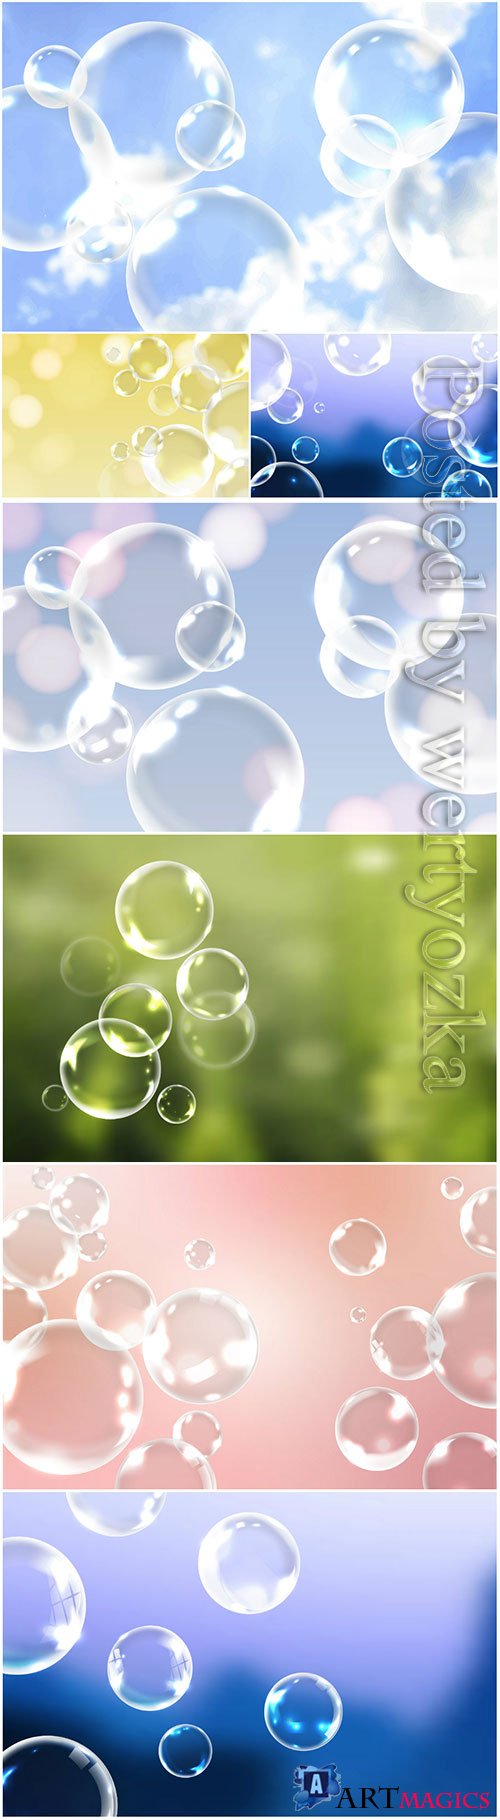 Soap bubbles vector background decoration